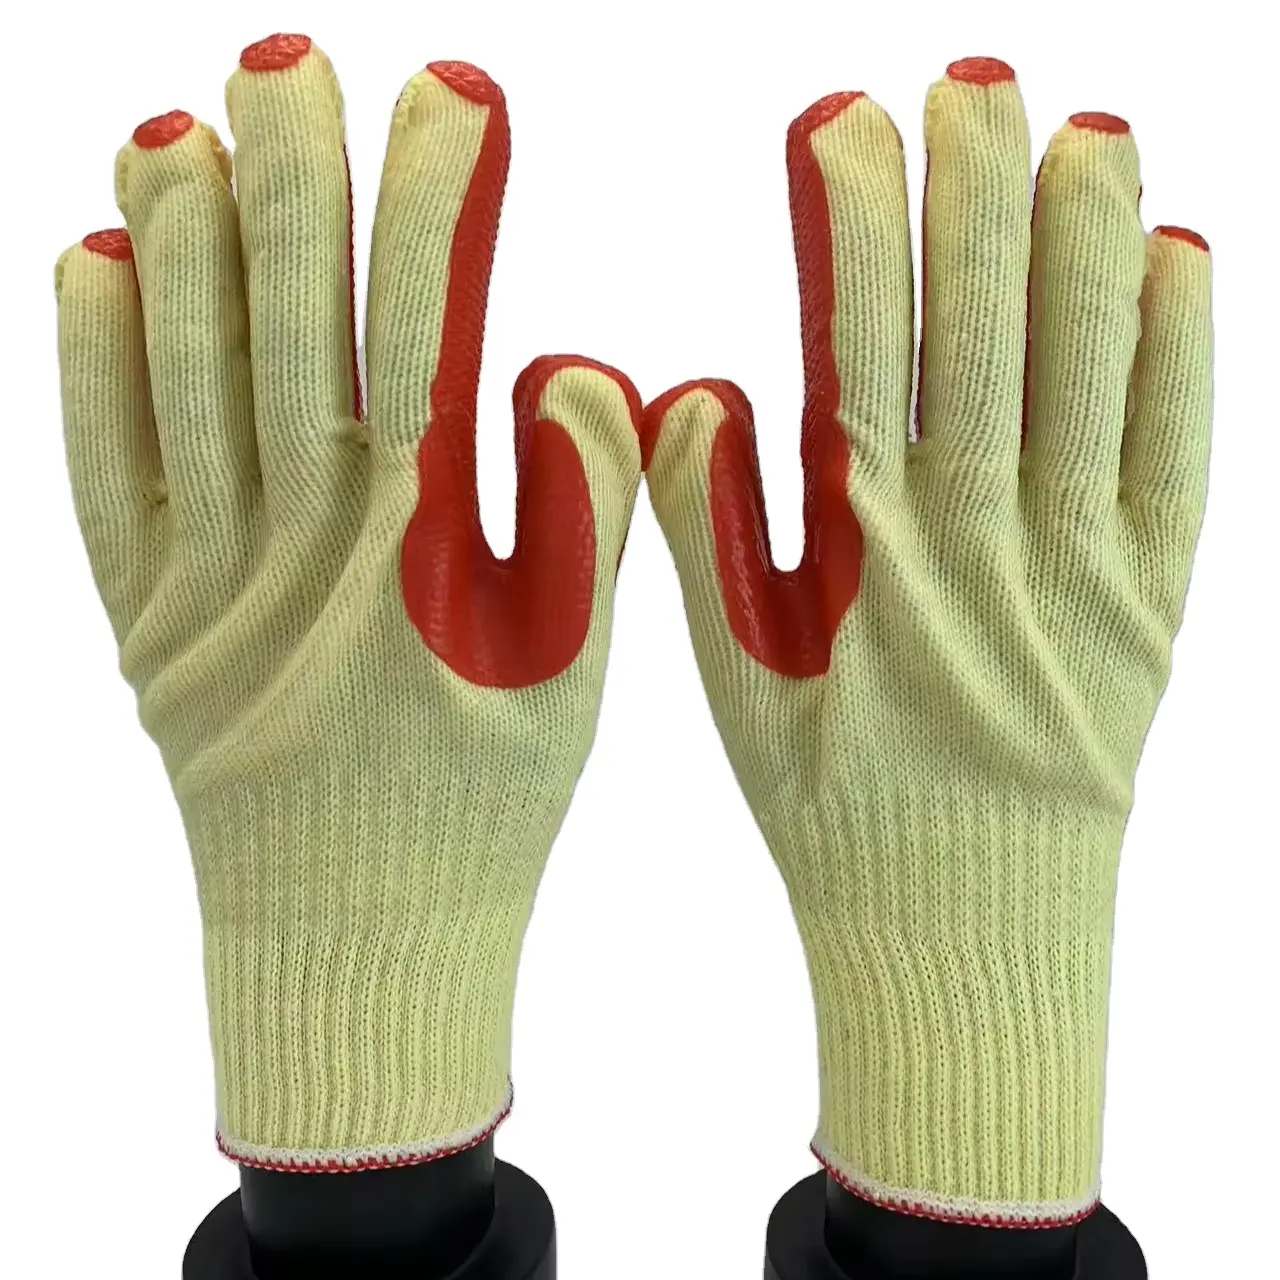 Gummihandschuhe Latex laminierte Baumwolle doppelt beschichtete Arbeitshandschuhe natürliches Latex Kautschuk Palm Latex beschichtete leichte Schwergewichts-Handschuhe